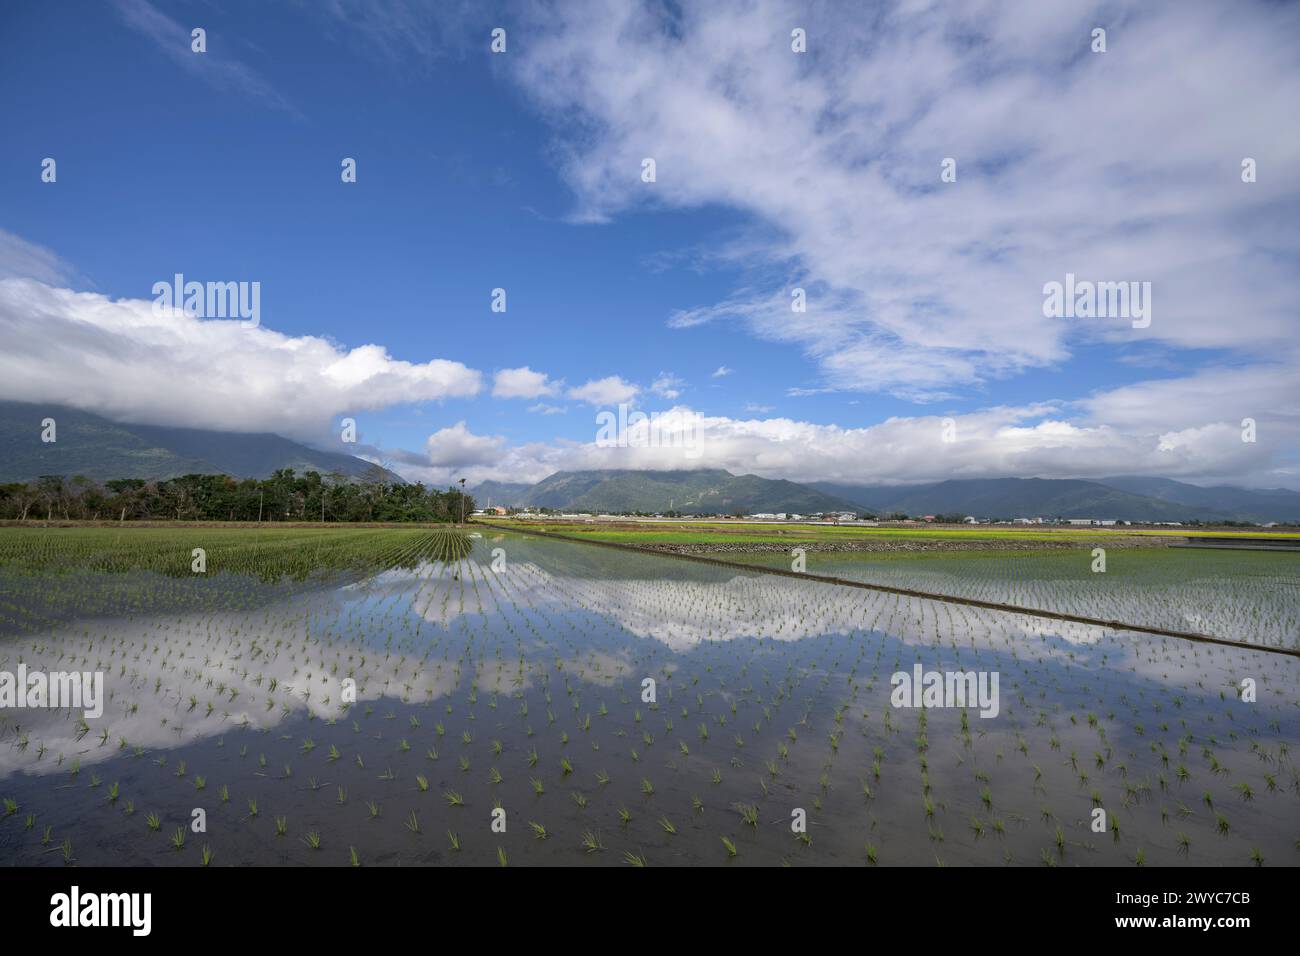 Un tranquillo paesaggio di risaie piene d'acqua che riflettono il cielo con montagne e nuvole lontane Foto Stock